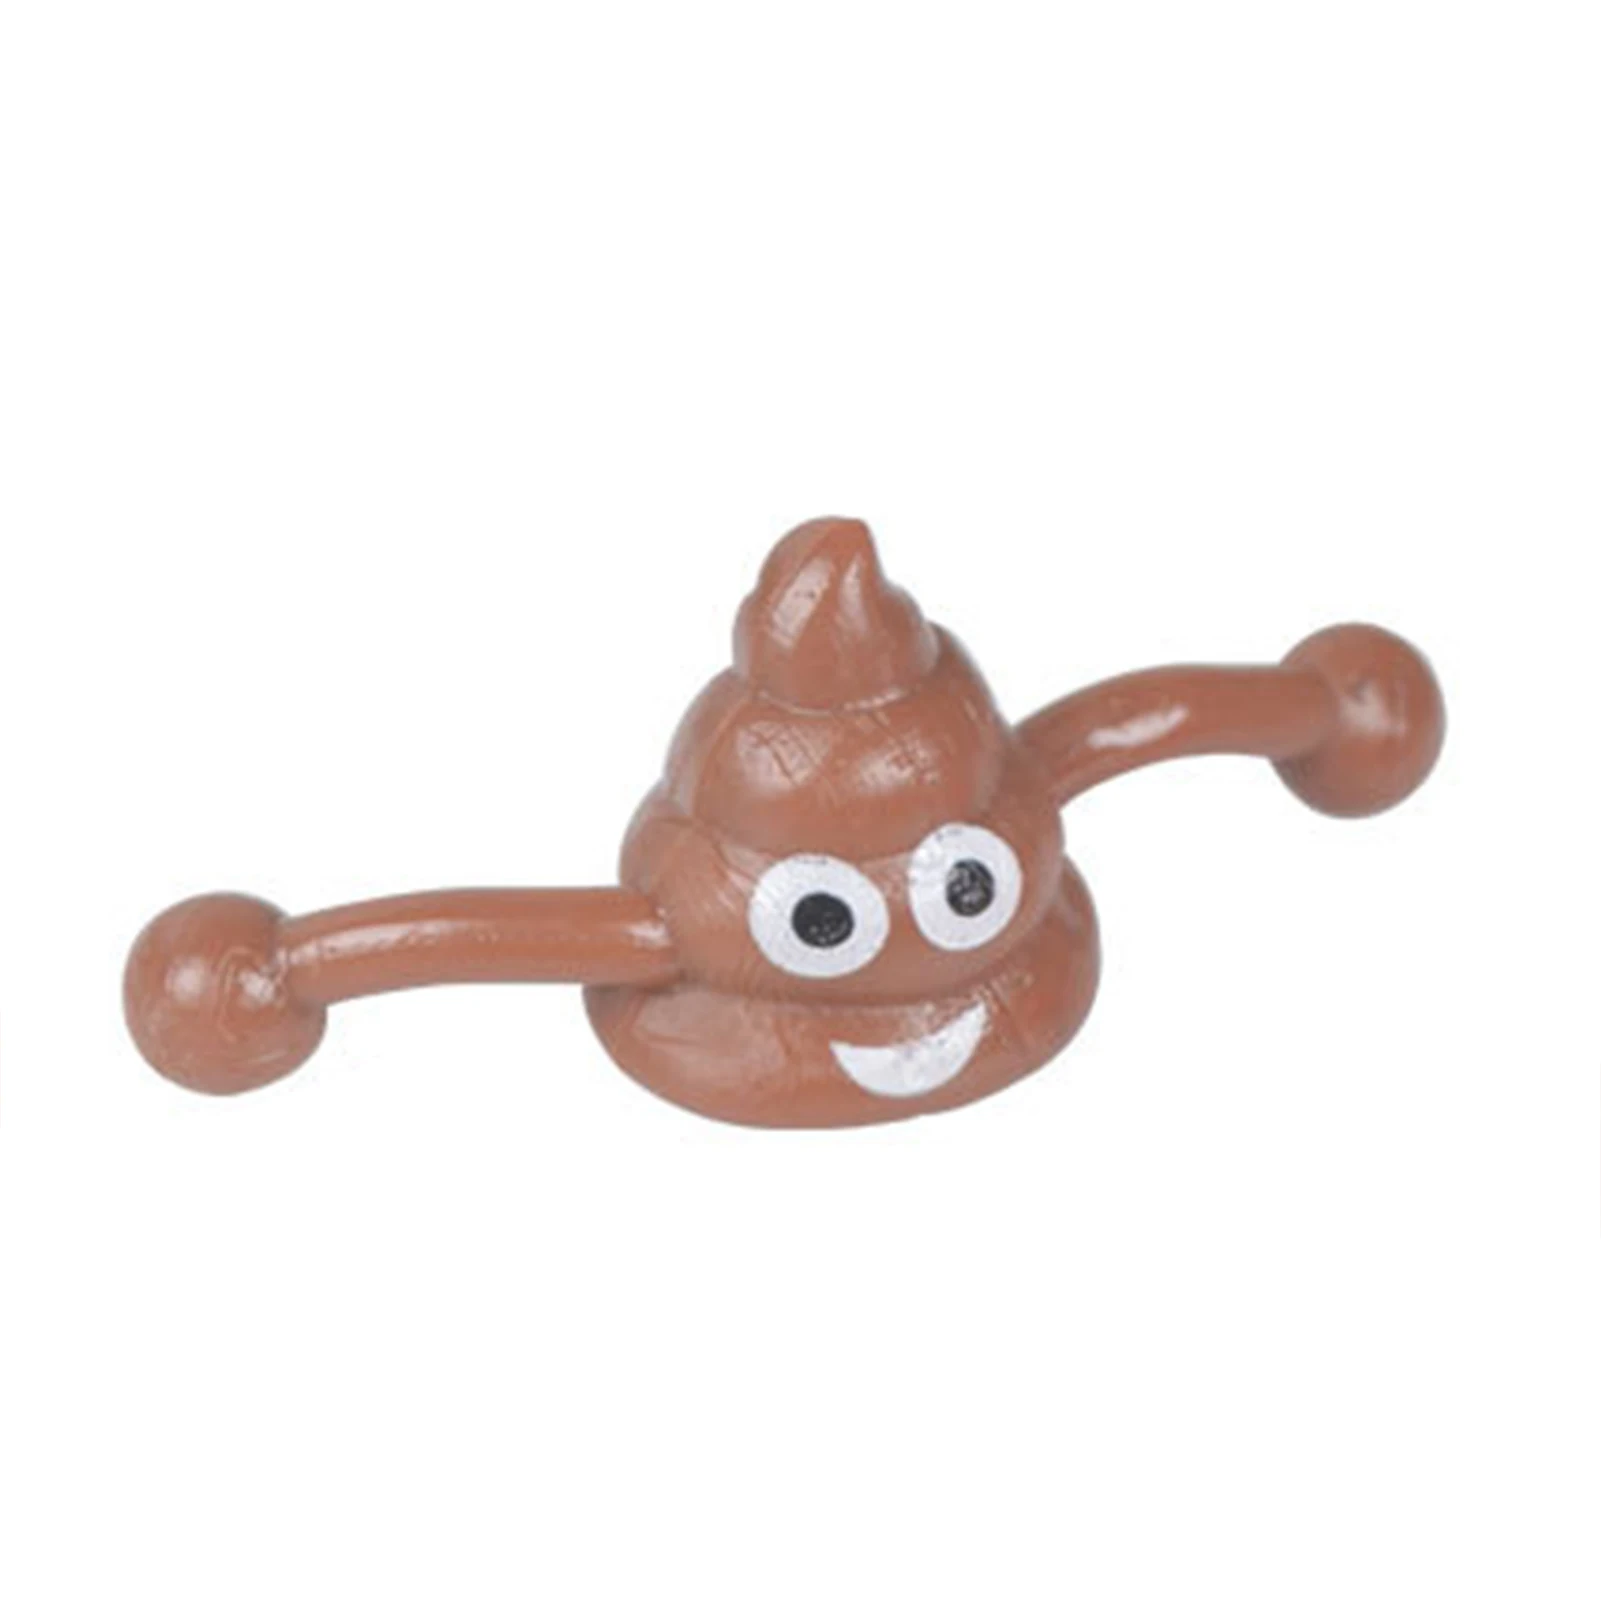 

Kids Slingshot Funny Catapult Slingshot Stretchy Elastic Poop Slingshot Toy Mini Sticky Poop Flying Toy As Novelty Gift For Kids